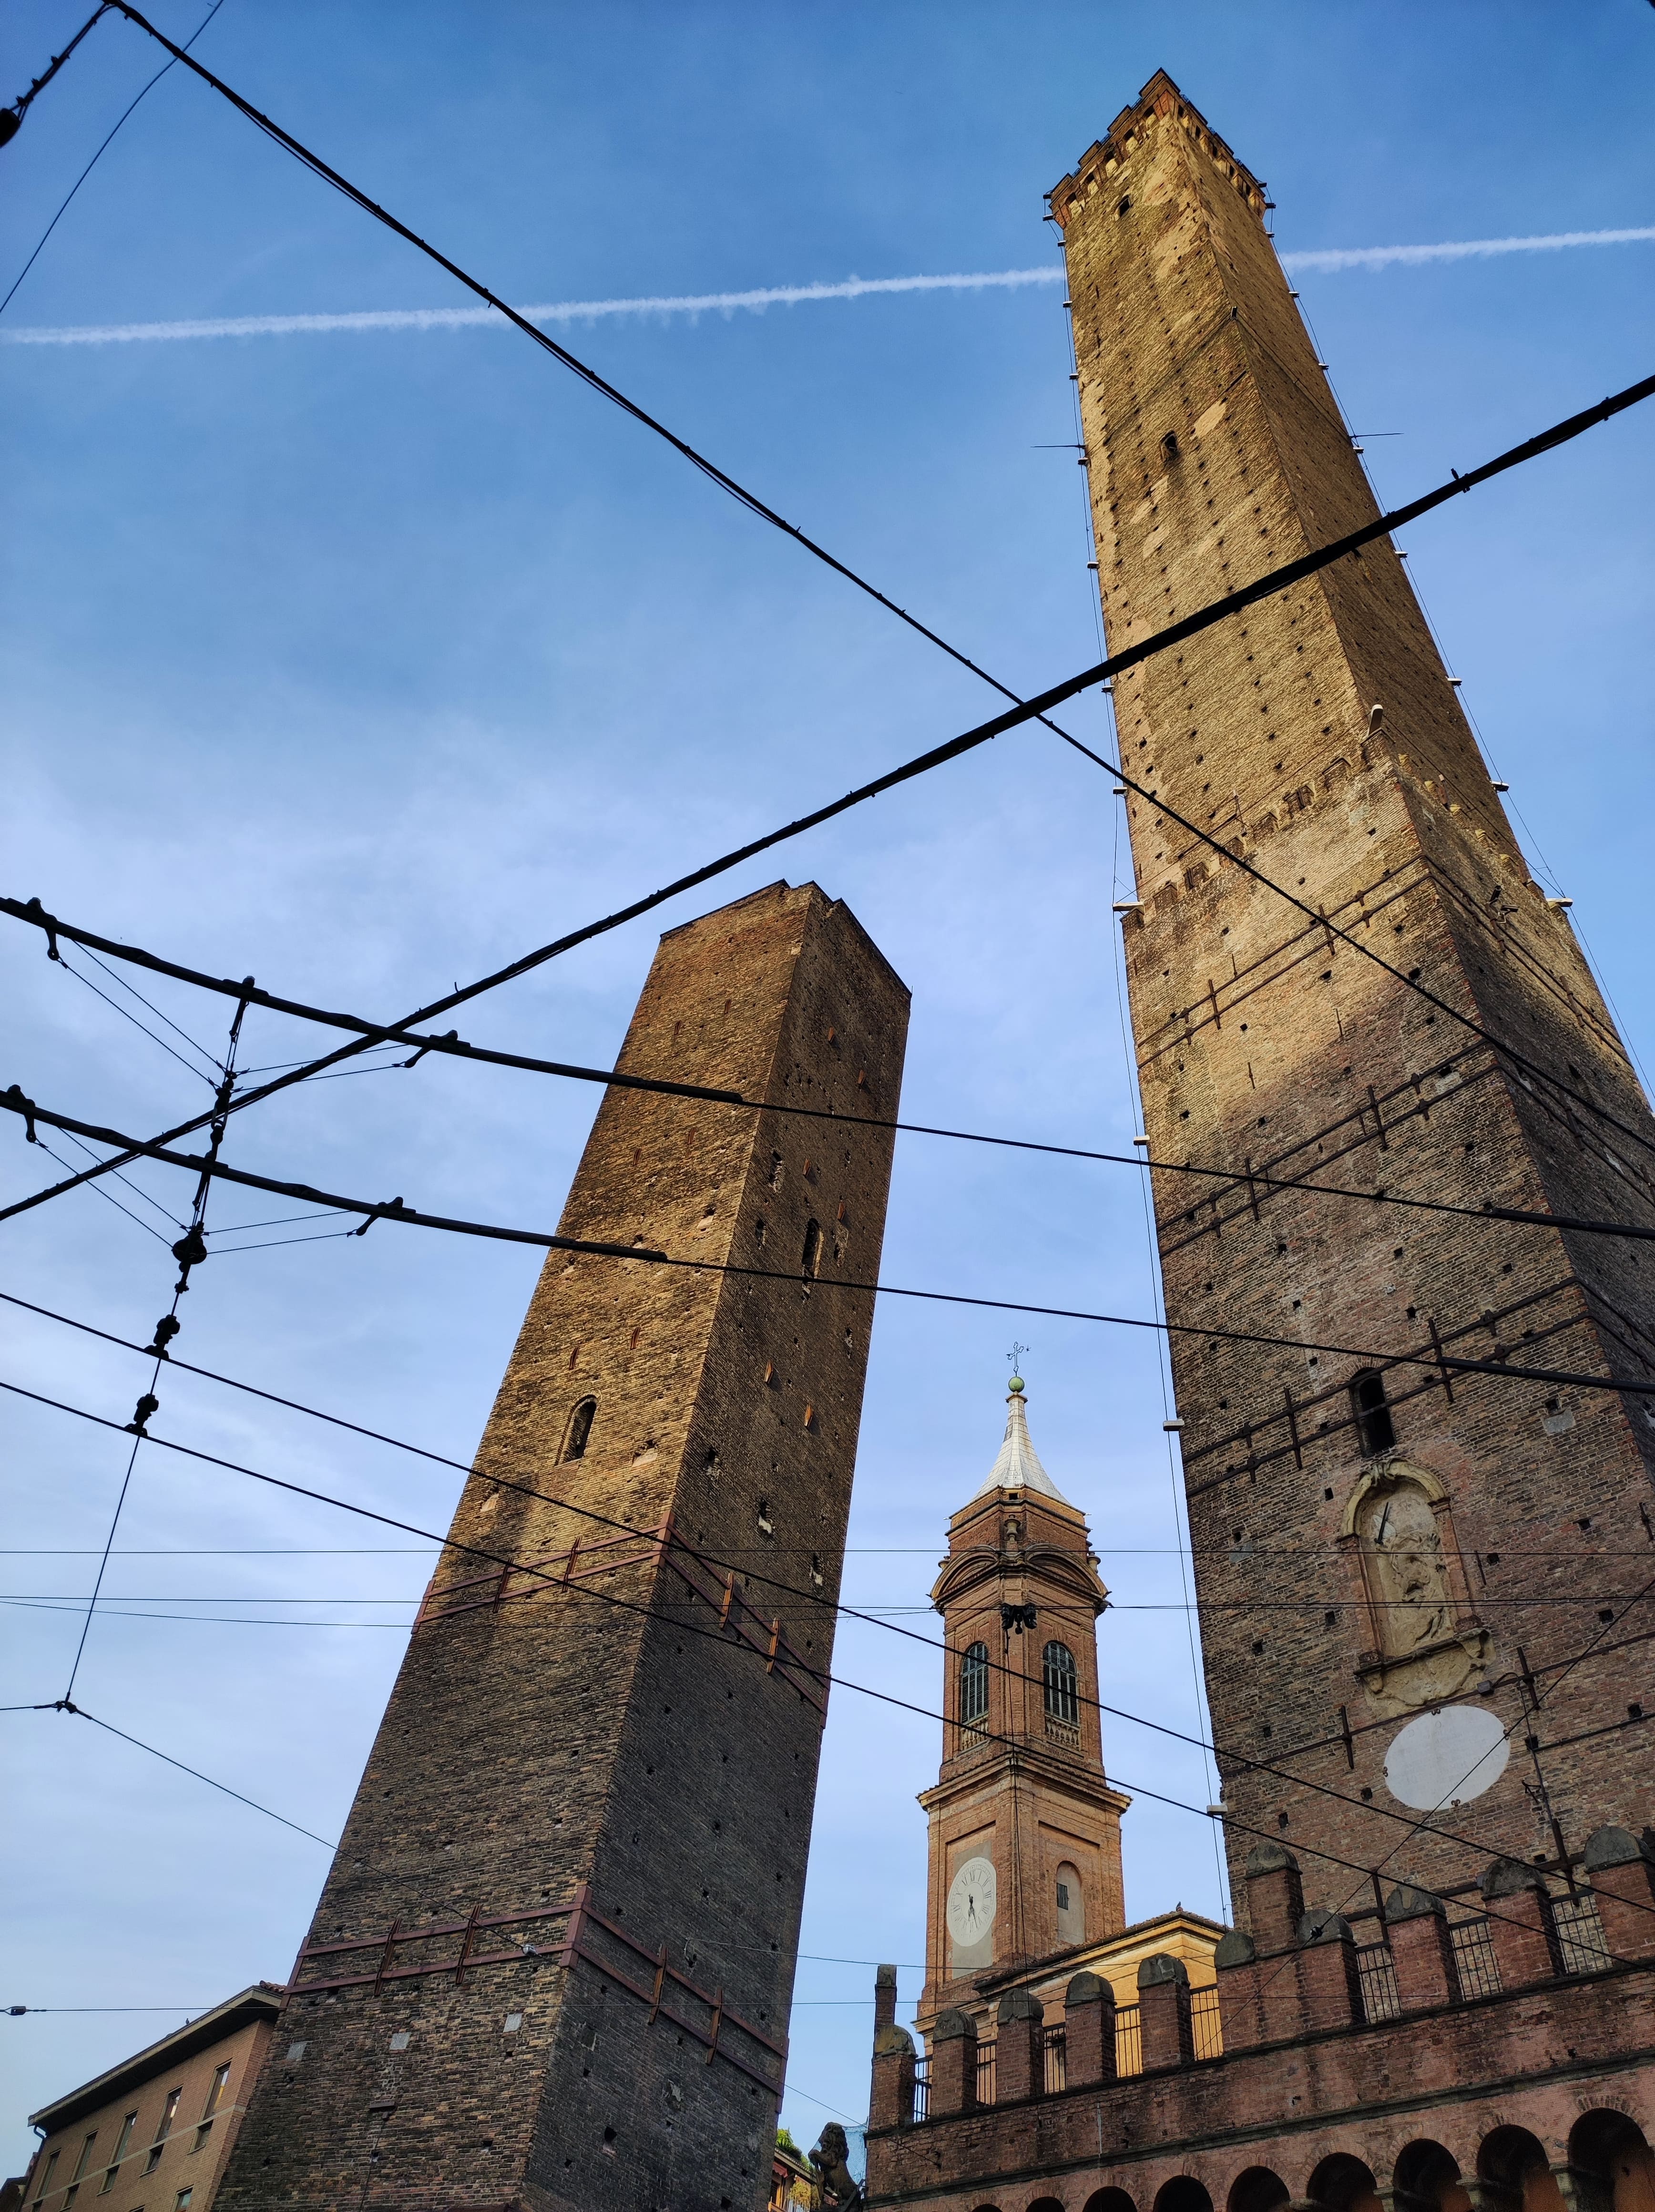 Salire sulla Torre degli Asinelli per vedere Bologna dall’alto!